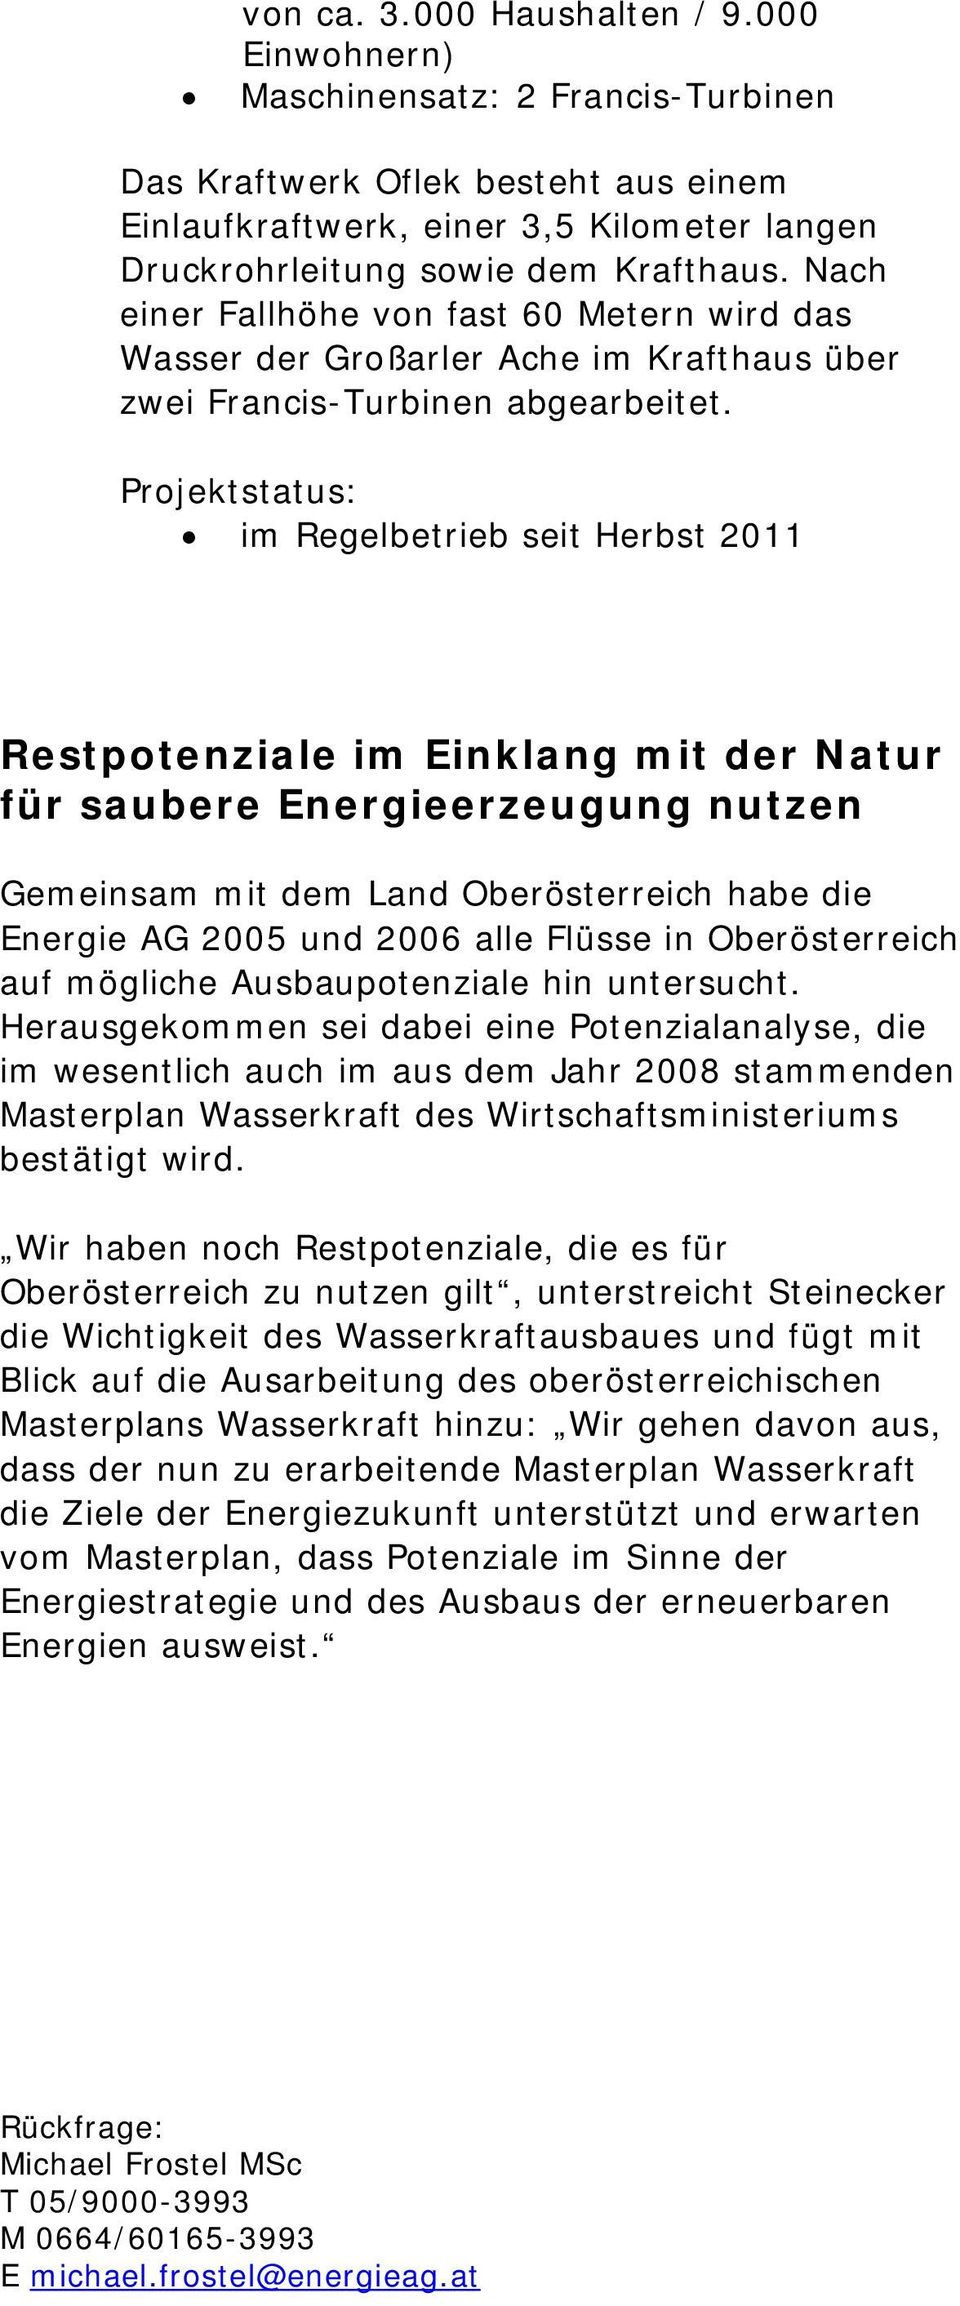 im Regelbetrieb seit Herbst 2011 Restpotenziale im Einklang mit der Natur für saubere Energieerzeugung nutzen Gemeinsam mit dem Land Oberösterreich habe die Energie AG 2005 und 2006 alle Flüsse in